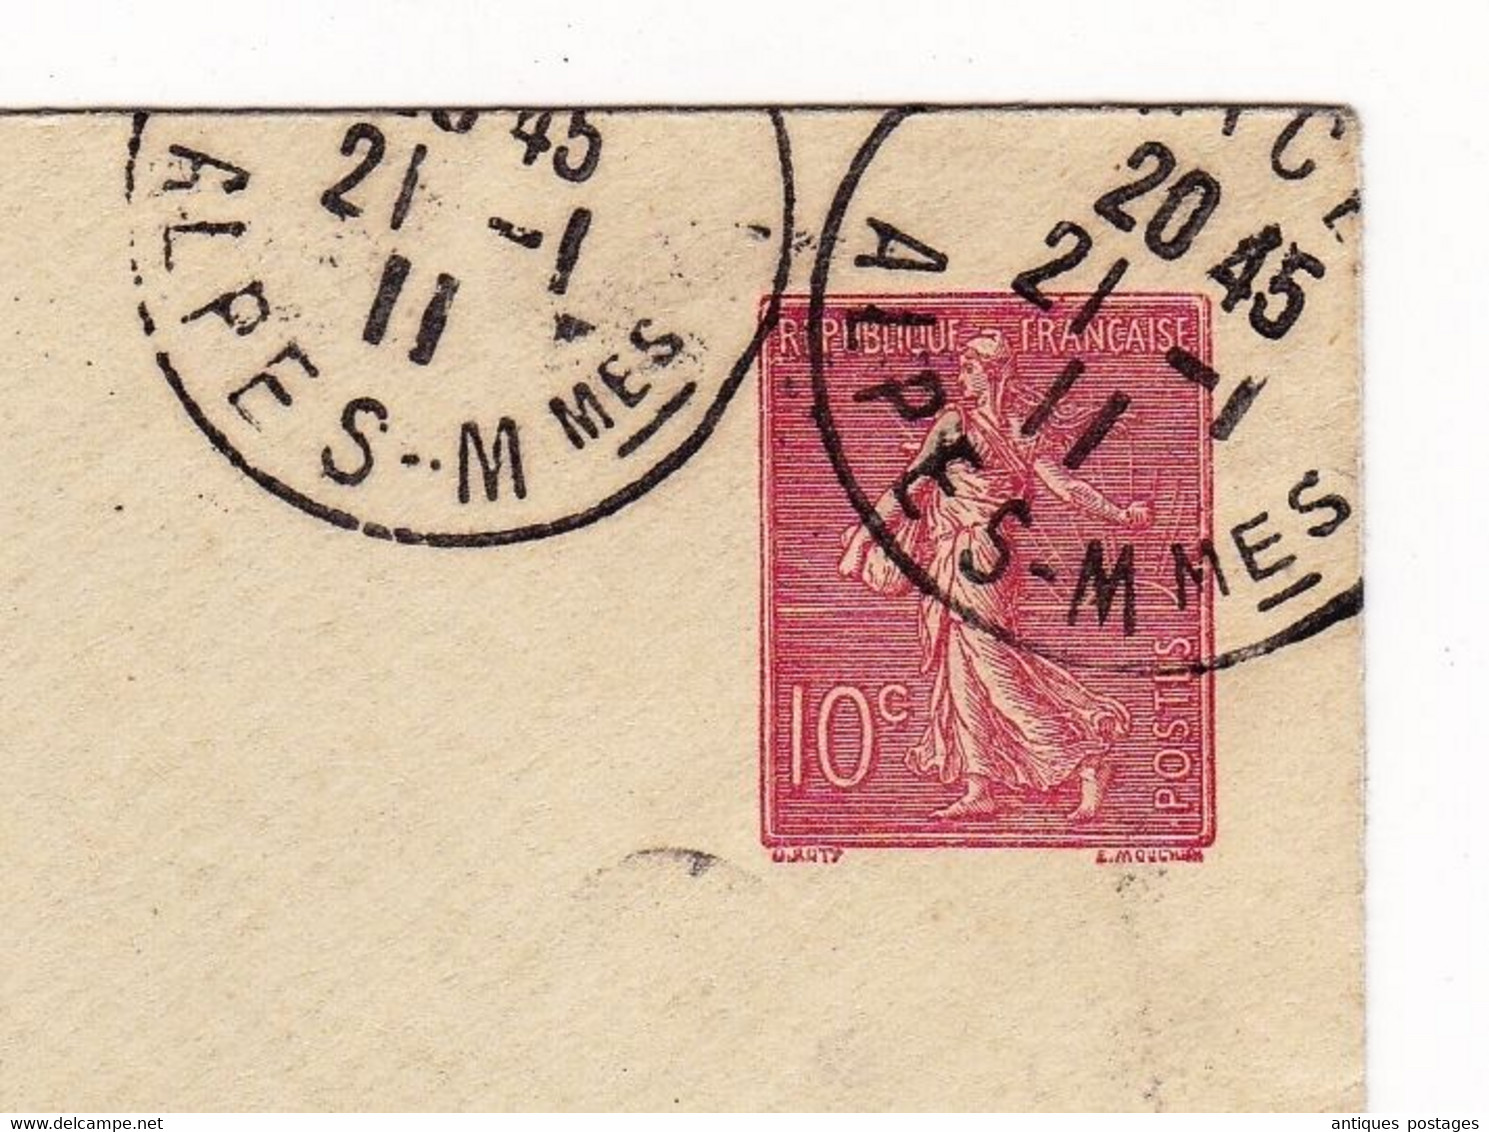 Enveloppe 1911 Entier Postal Semeuse 10 Centimes Nice Alpes Maritimes Pour Lille Nord Hugo De Cort Numismatie - Standaardomslagen En TSC (Voor 1995)